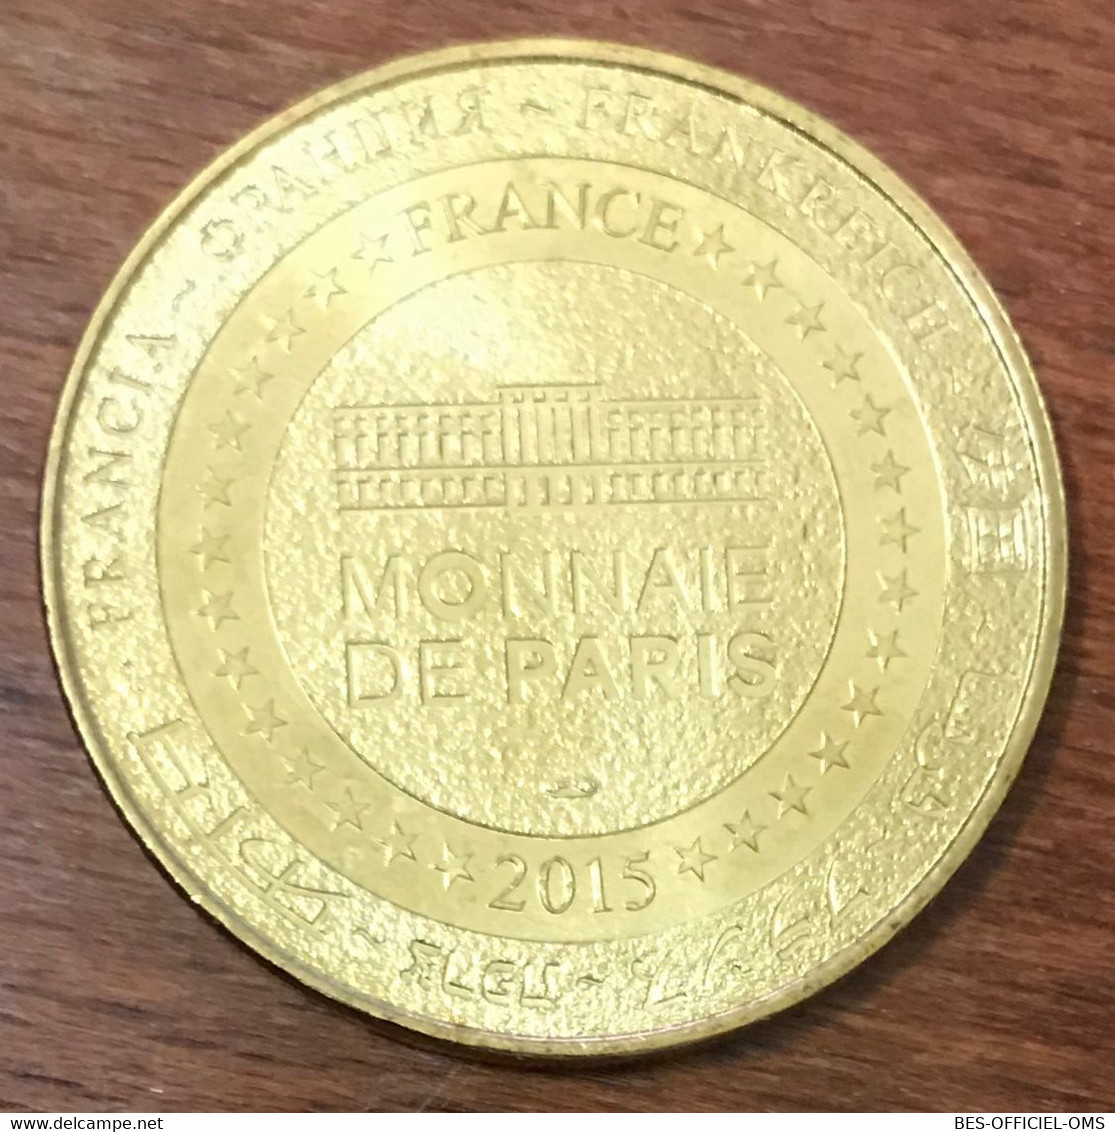 13 AUBAGNE LA PYRAMIDE DE KHÉOPS MDP 2015 MEDAILLE MONNAIE DE PARIS JETON TOURISTIQUE MEDALS COINS TOKENS - 2015